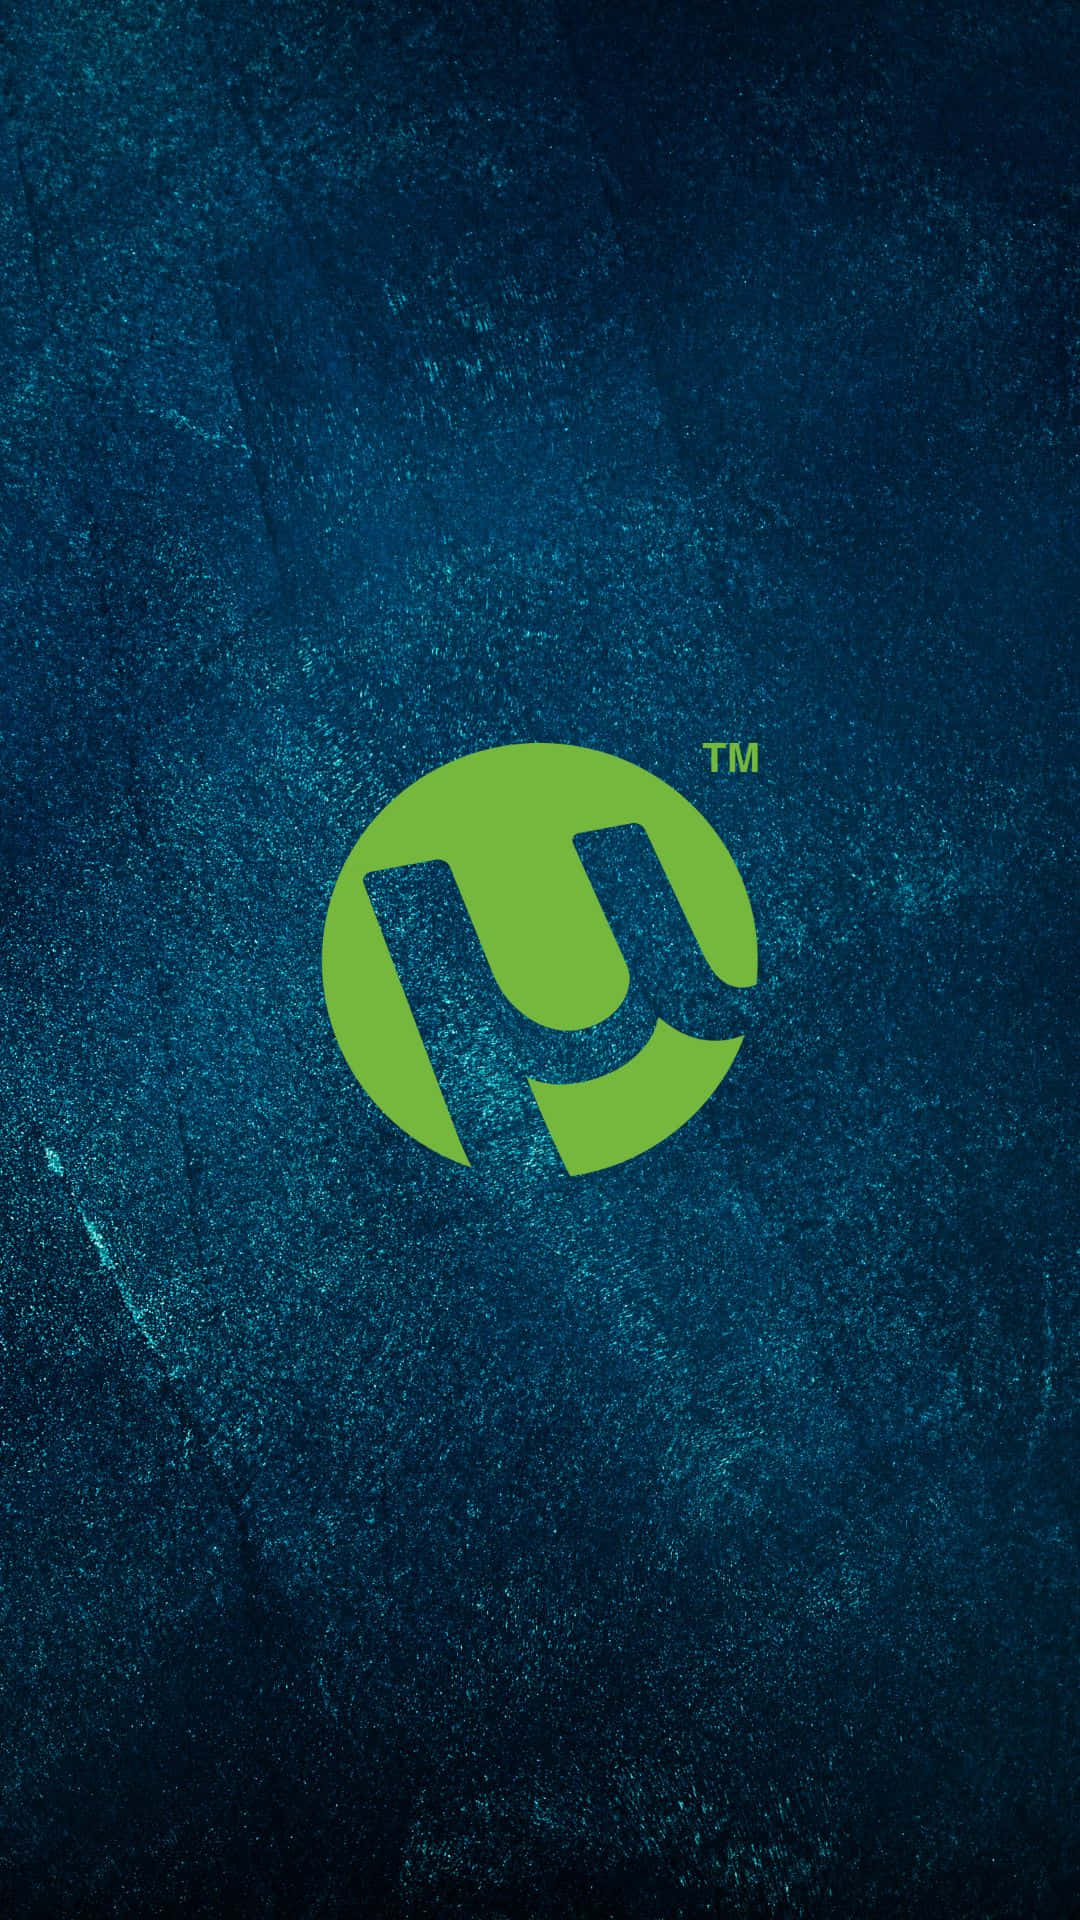 Eingrünes Logo Auf Einem Blauen Hintergrund Wallpaper